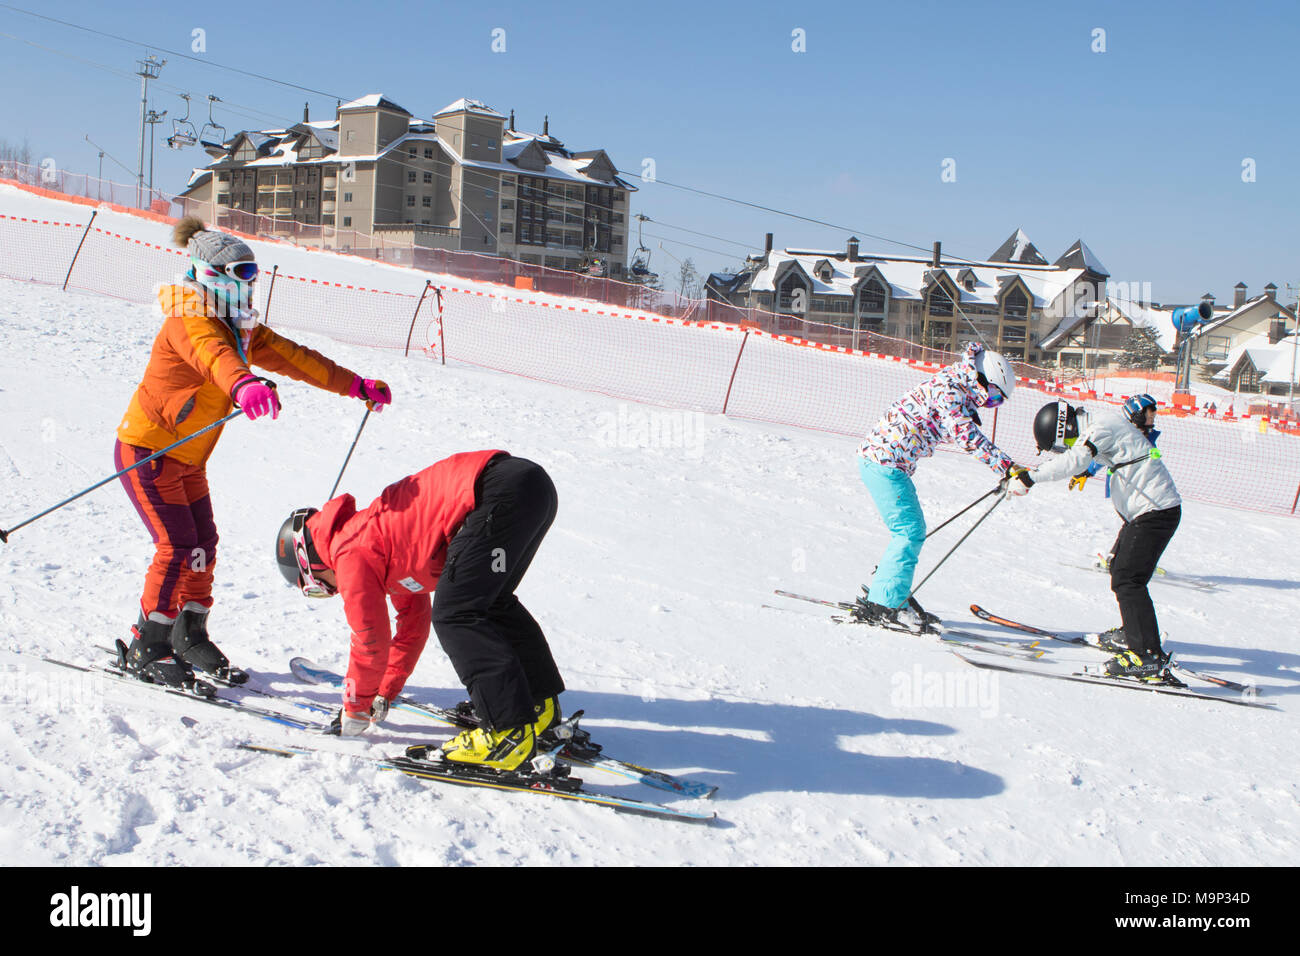 Due donne viene insegnato come a sciare su un dolce pendio di sci del Alpensia resort nella regione del Gangwon-do di Corea del Sud. Il Alpensia Resort è una località sciistica e una attrazione turistica. Esso si trova sul territorio del comune di Daegwallyeong-myeon, nella contea di Pyeongchang, ospitando le Olimpiadi Invernali nel febbraio 2018. La stazione sciistica è di circa 2 ore e mezzo da Seoul o dall'Aeroporto di Incheon in auto, prevalentemente tutti autostrada. Alpensia dispone di 6 piste per lo sci e lo snowboard, con corse fino a 1,4 km (0,87 mi) lungo, per principianti e progrediti, e un'area riservata Foto Stock